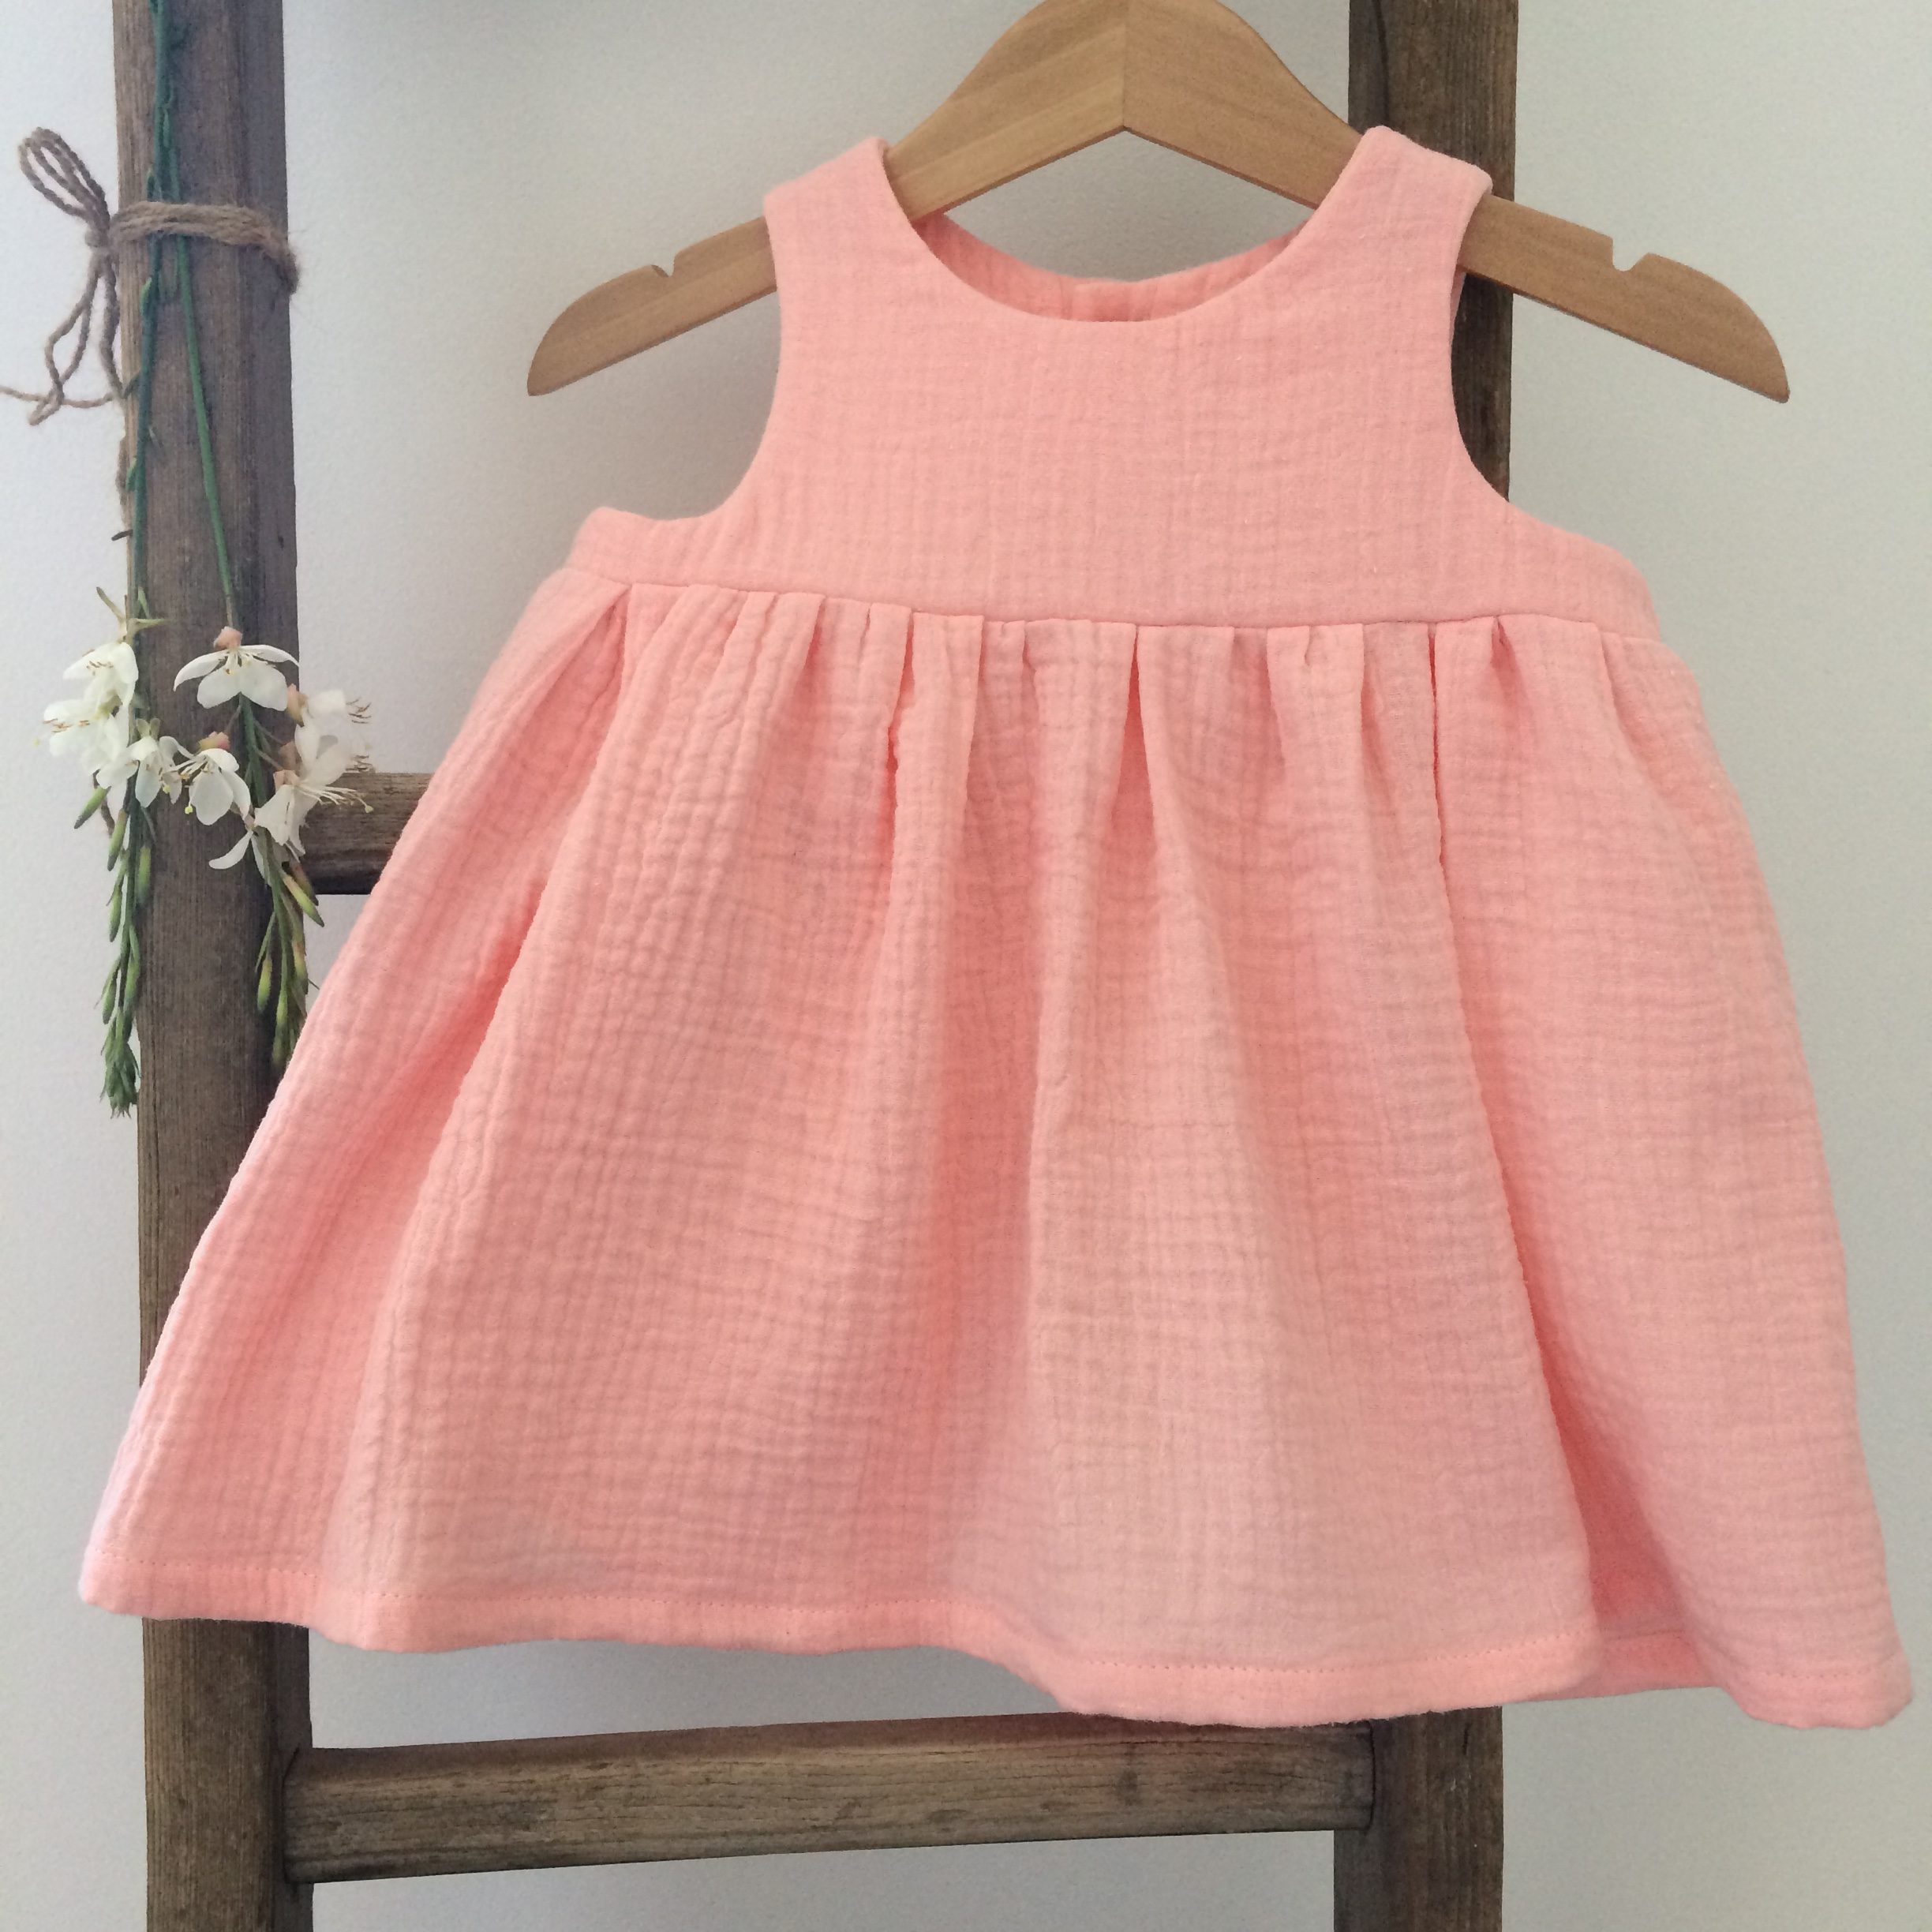 Patron couture robe bébé - ARIANE - Patron pdf bébé Robe chasuble